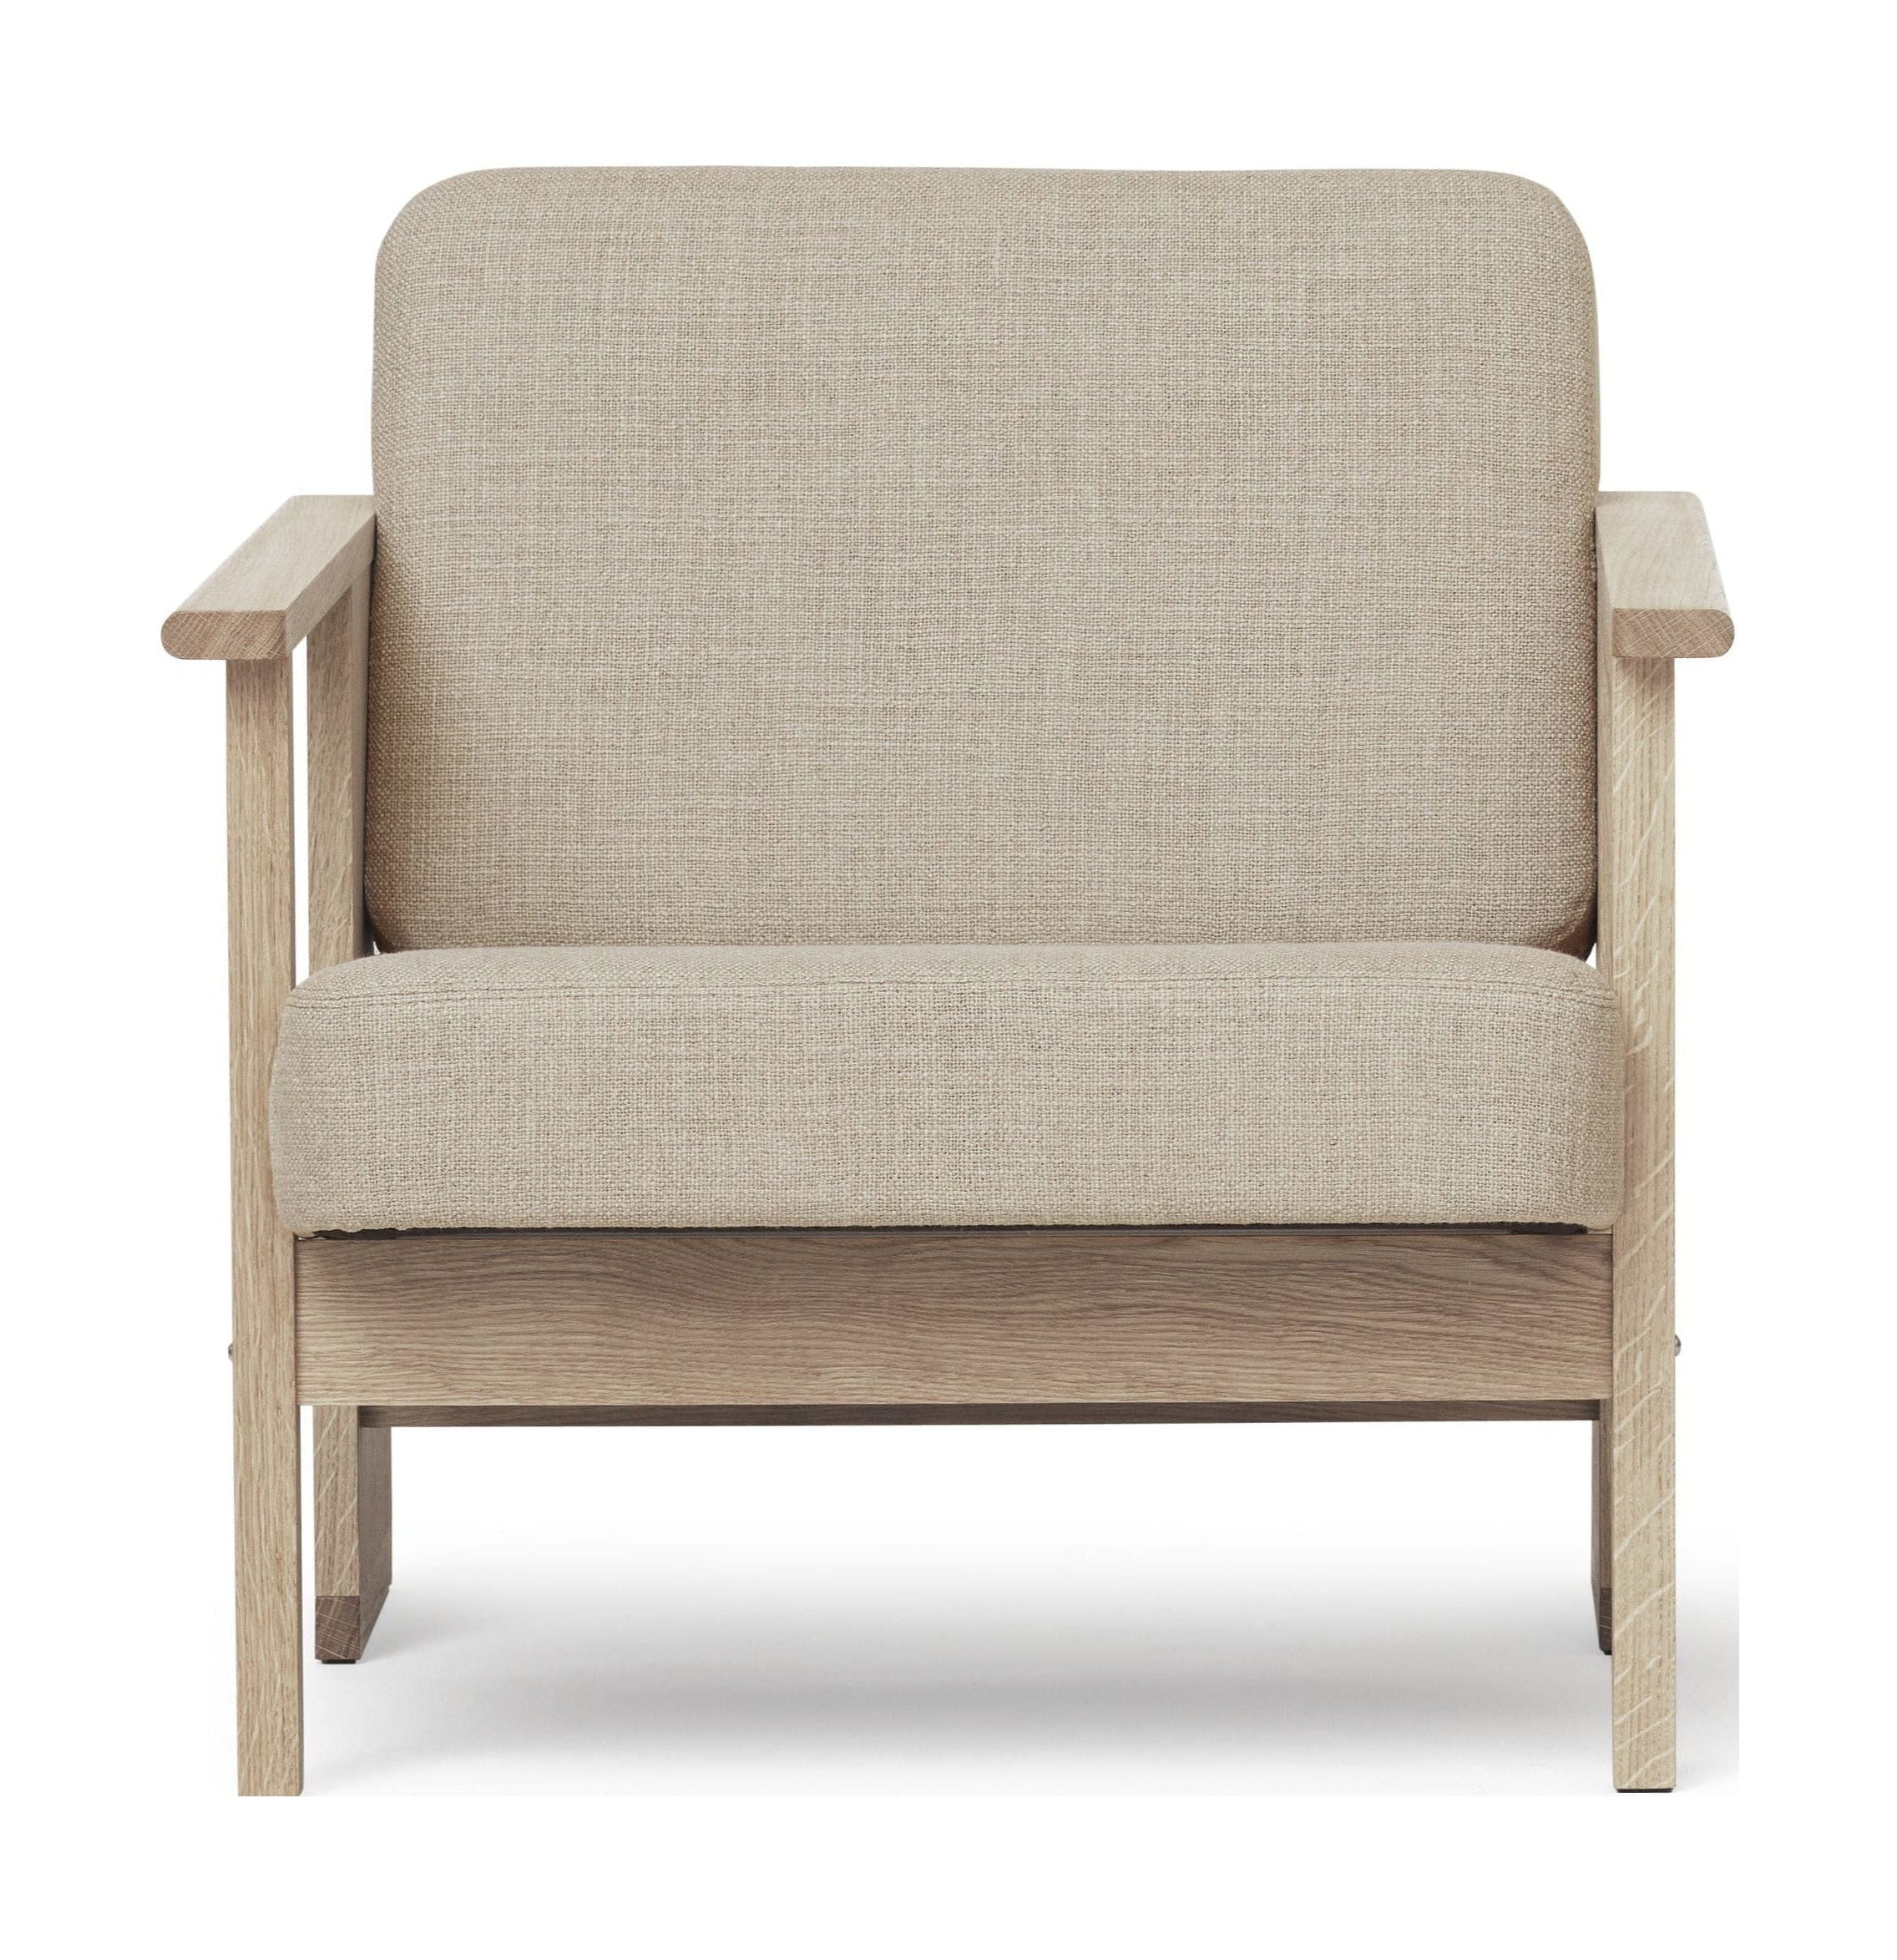 Form & Refine Bloquer une chaise de salon. Chêne à l'huile blanche